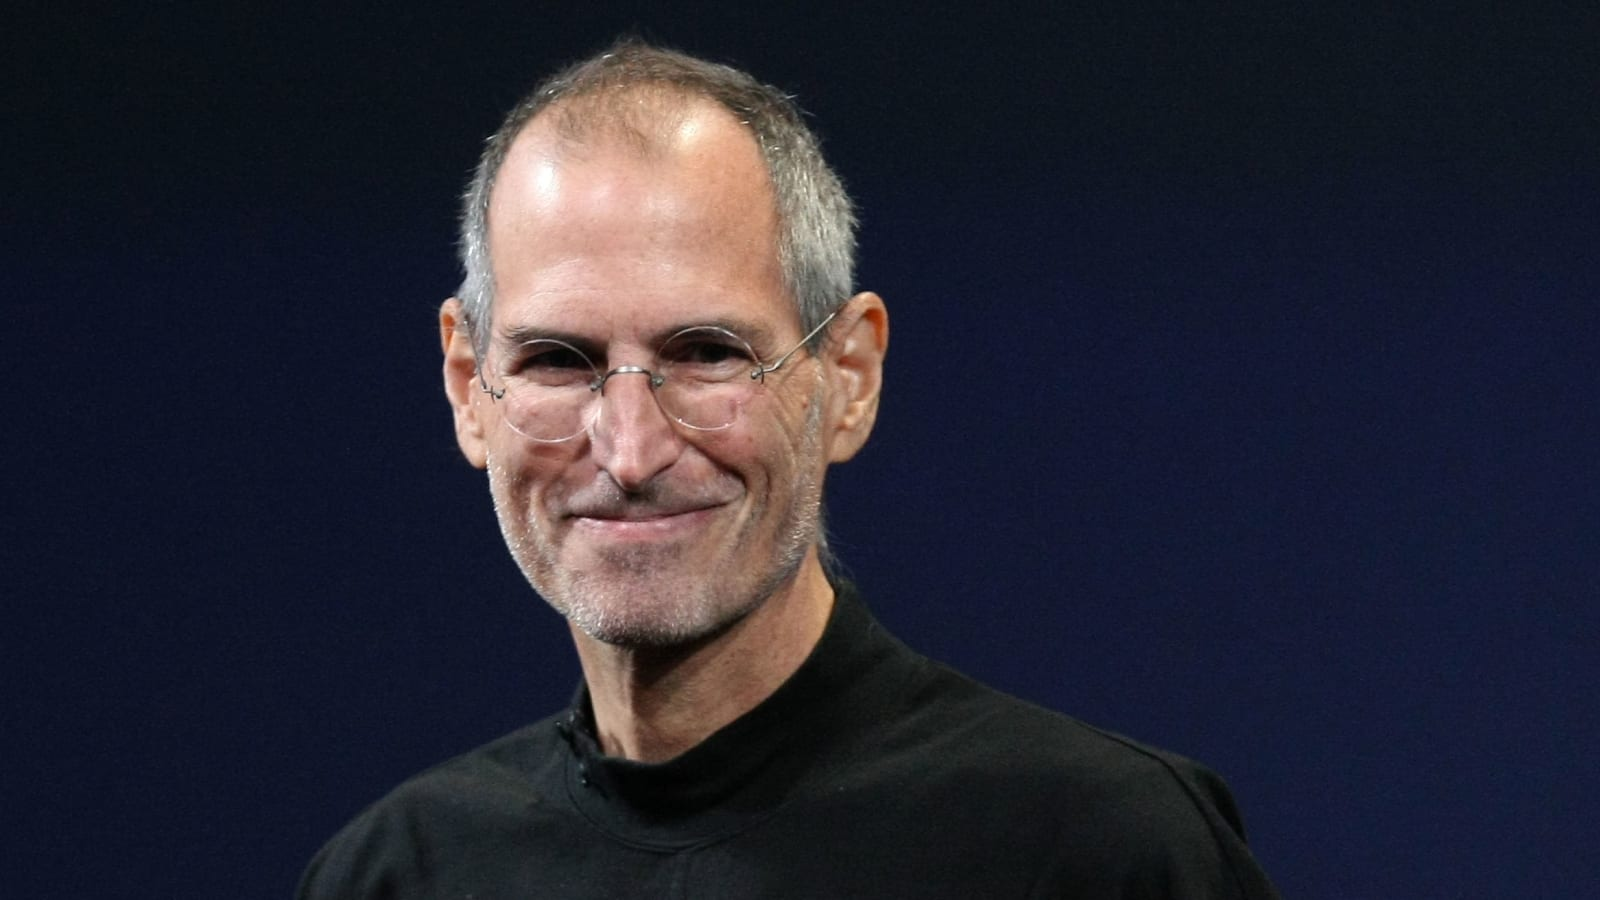 Apple founder, Steve Jobs